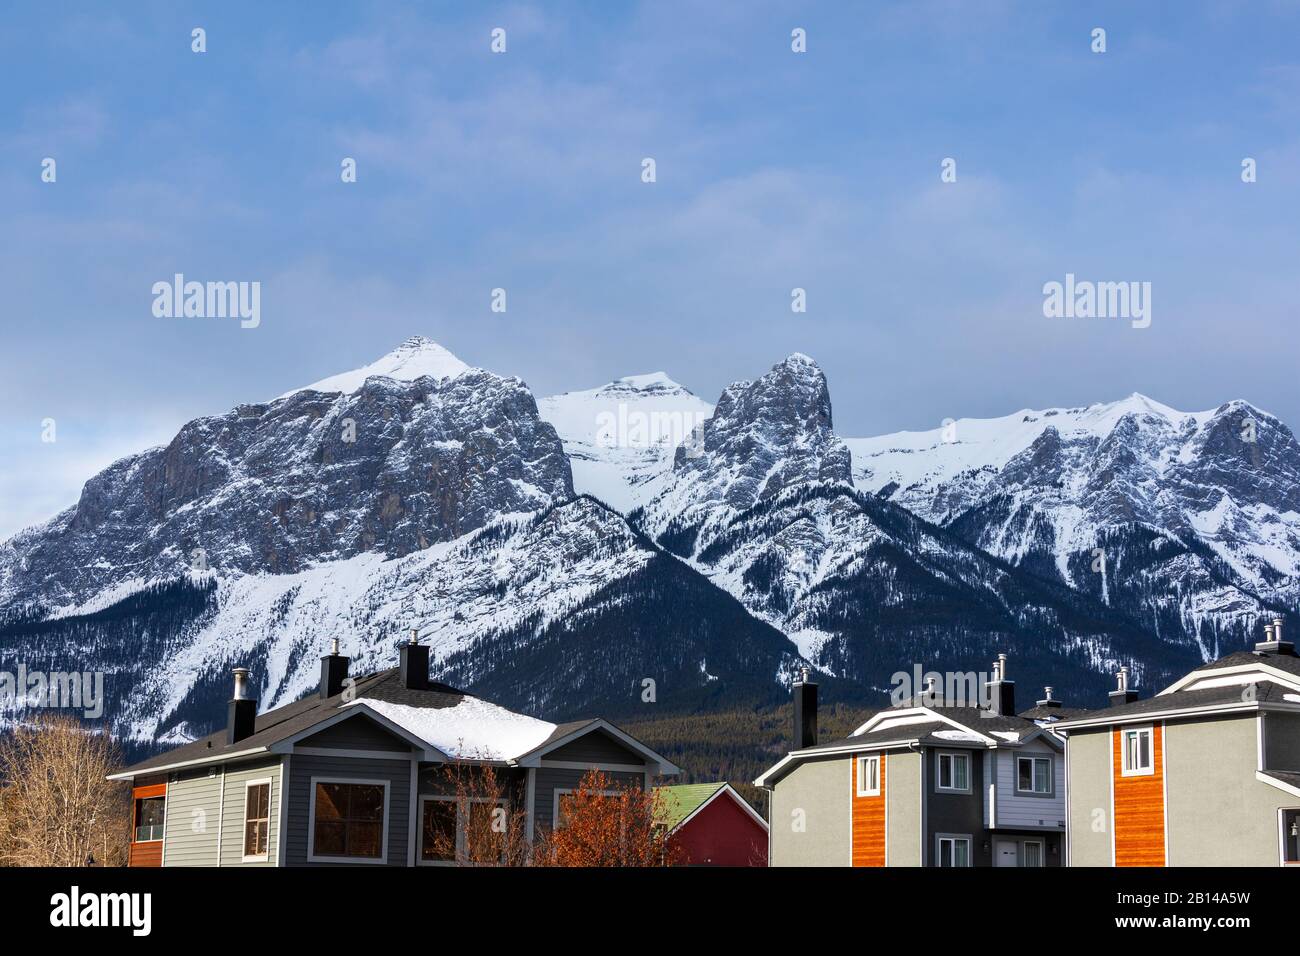 Rangées de maisons dans les Rocheuses canadiennes de Canmore, en Alberta, avec vue spectaculaire sur la montagne Rundle en arrière-plan. Banque D'Images